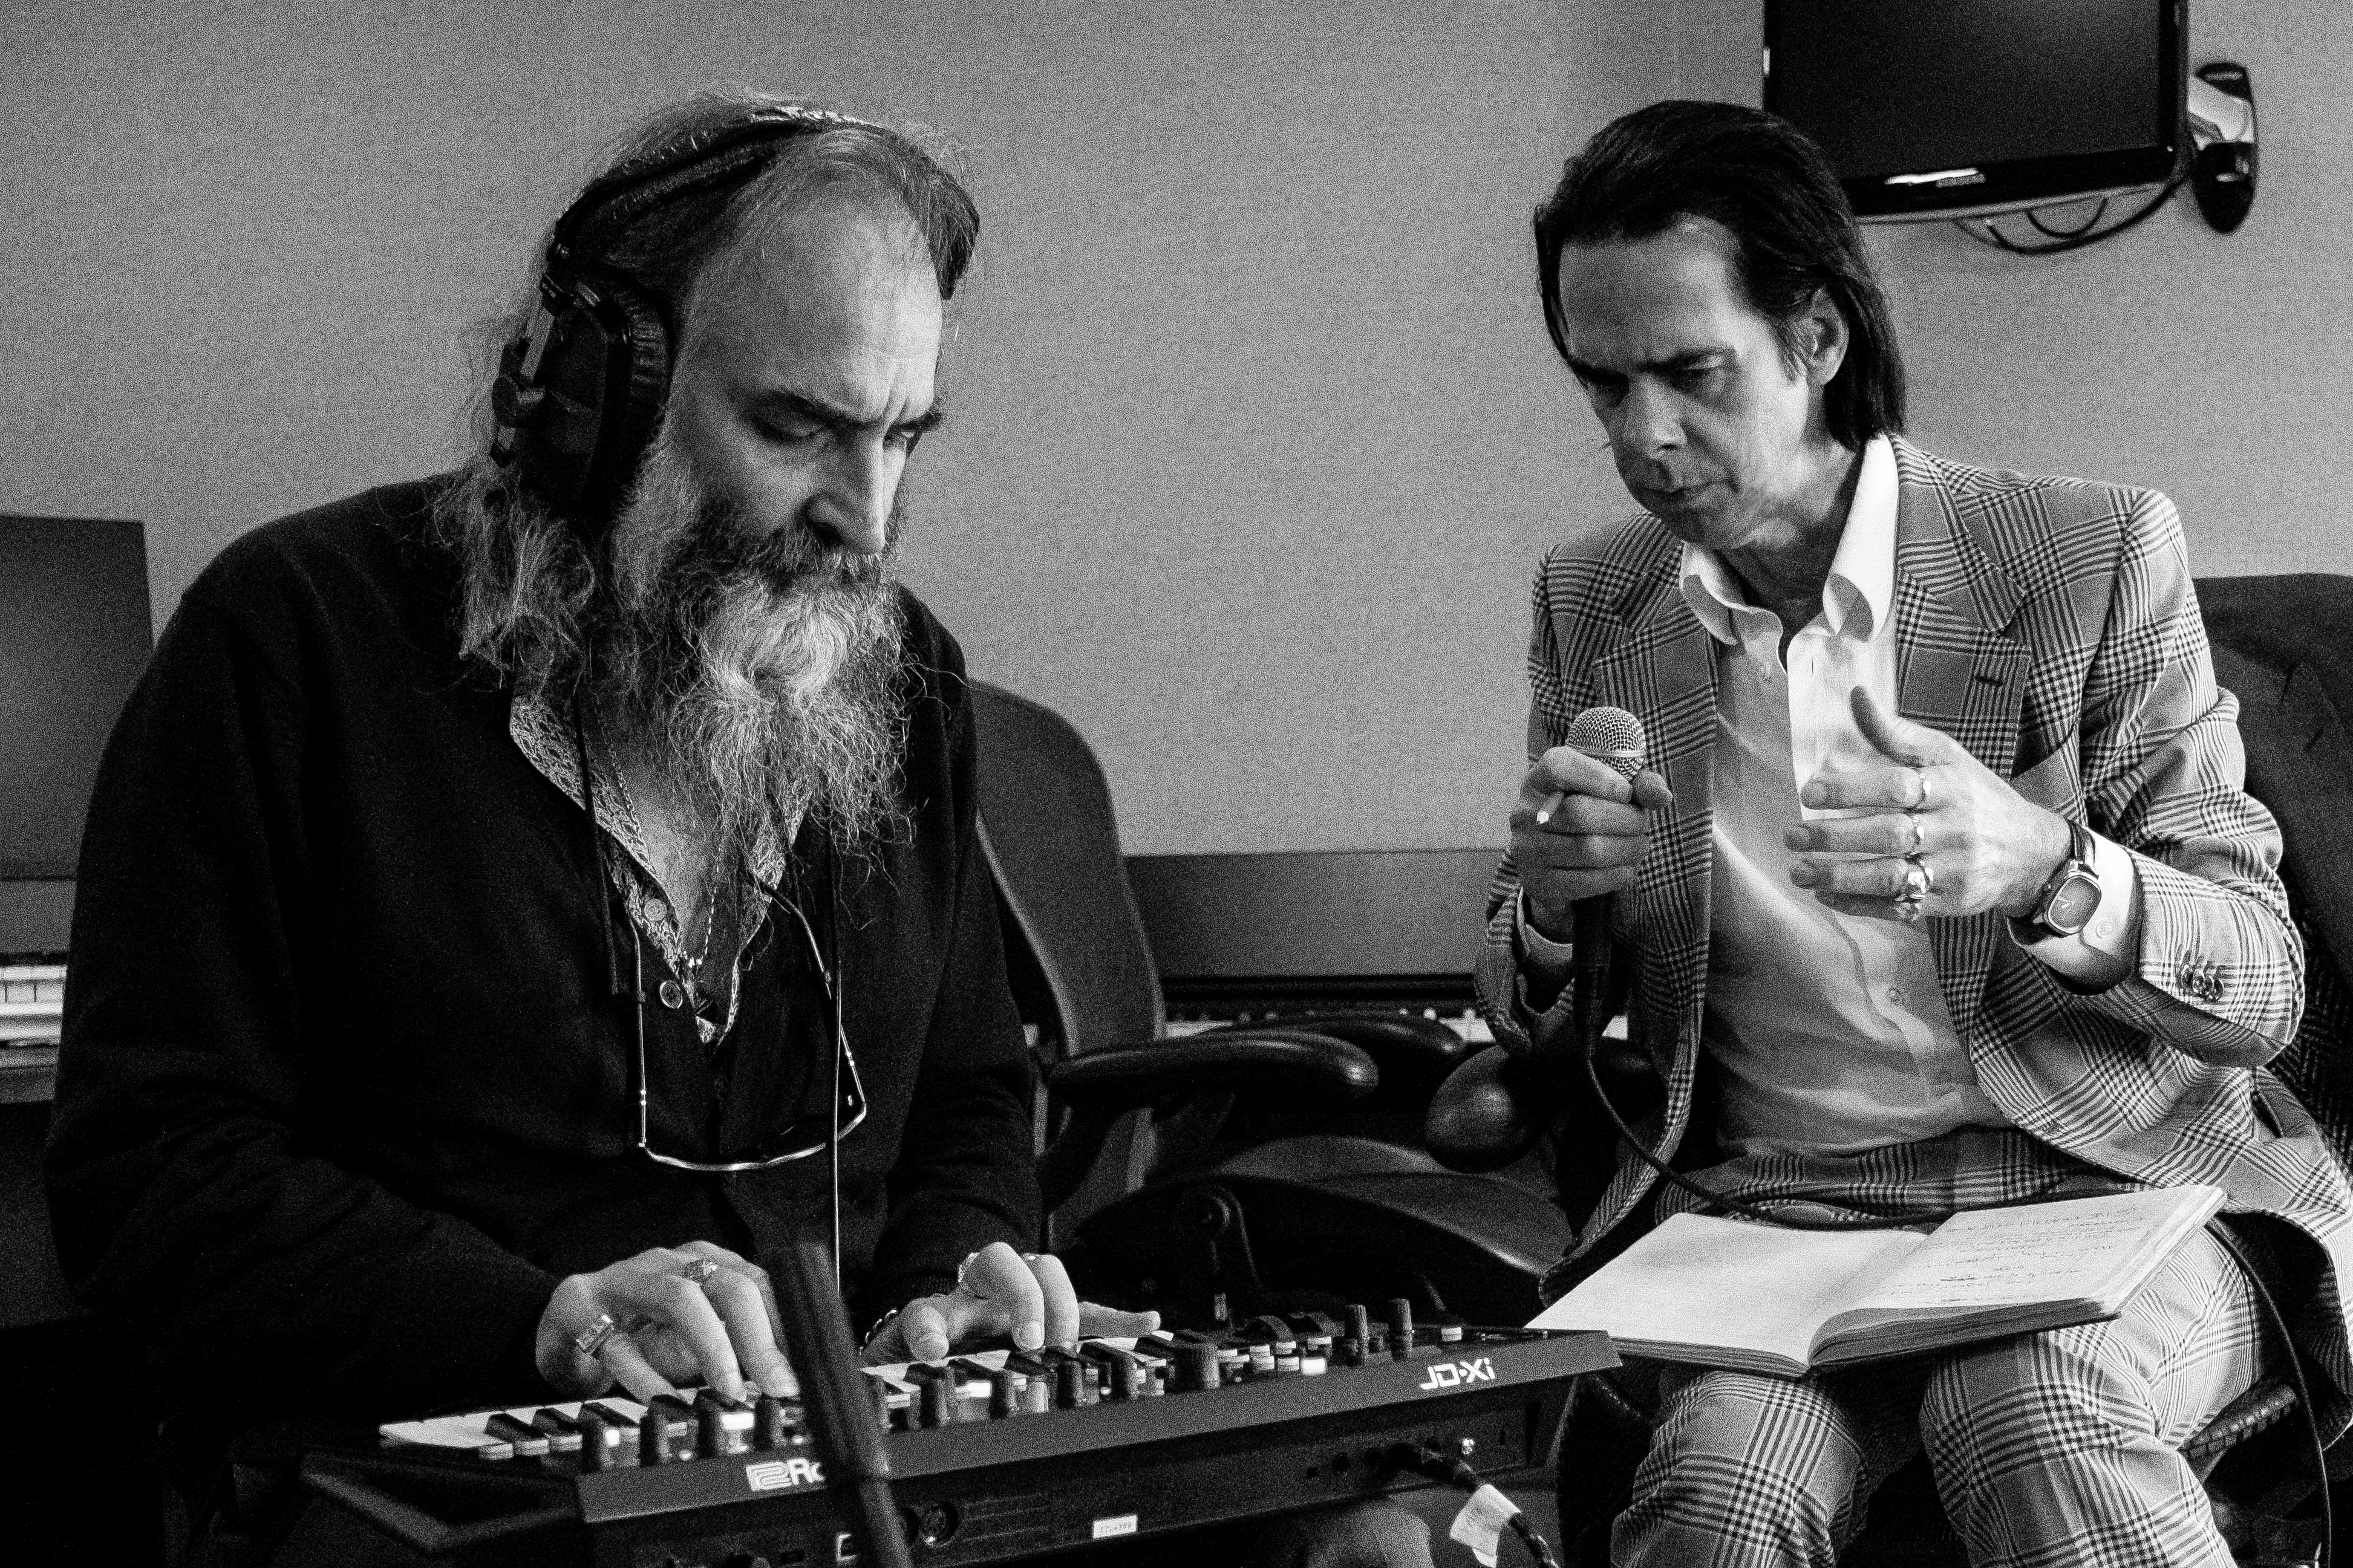 TRAILER: Ny dokumentar om samarbejdet mellem Nick Cave og Warren Ellis